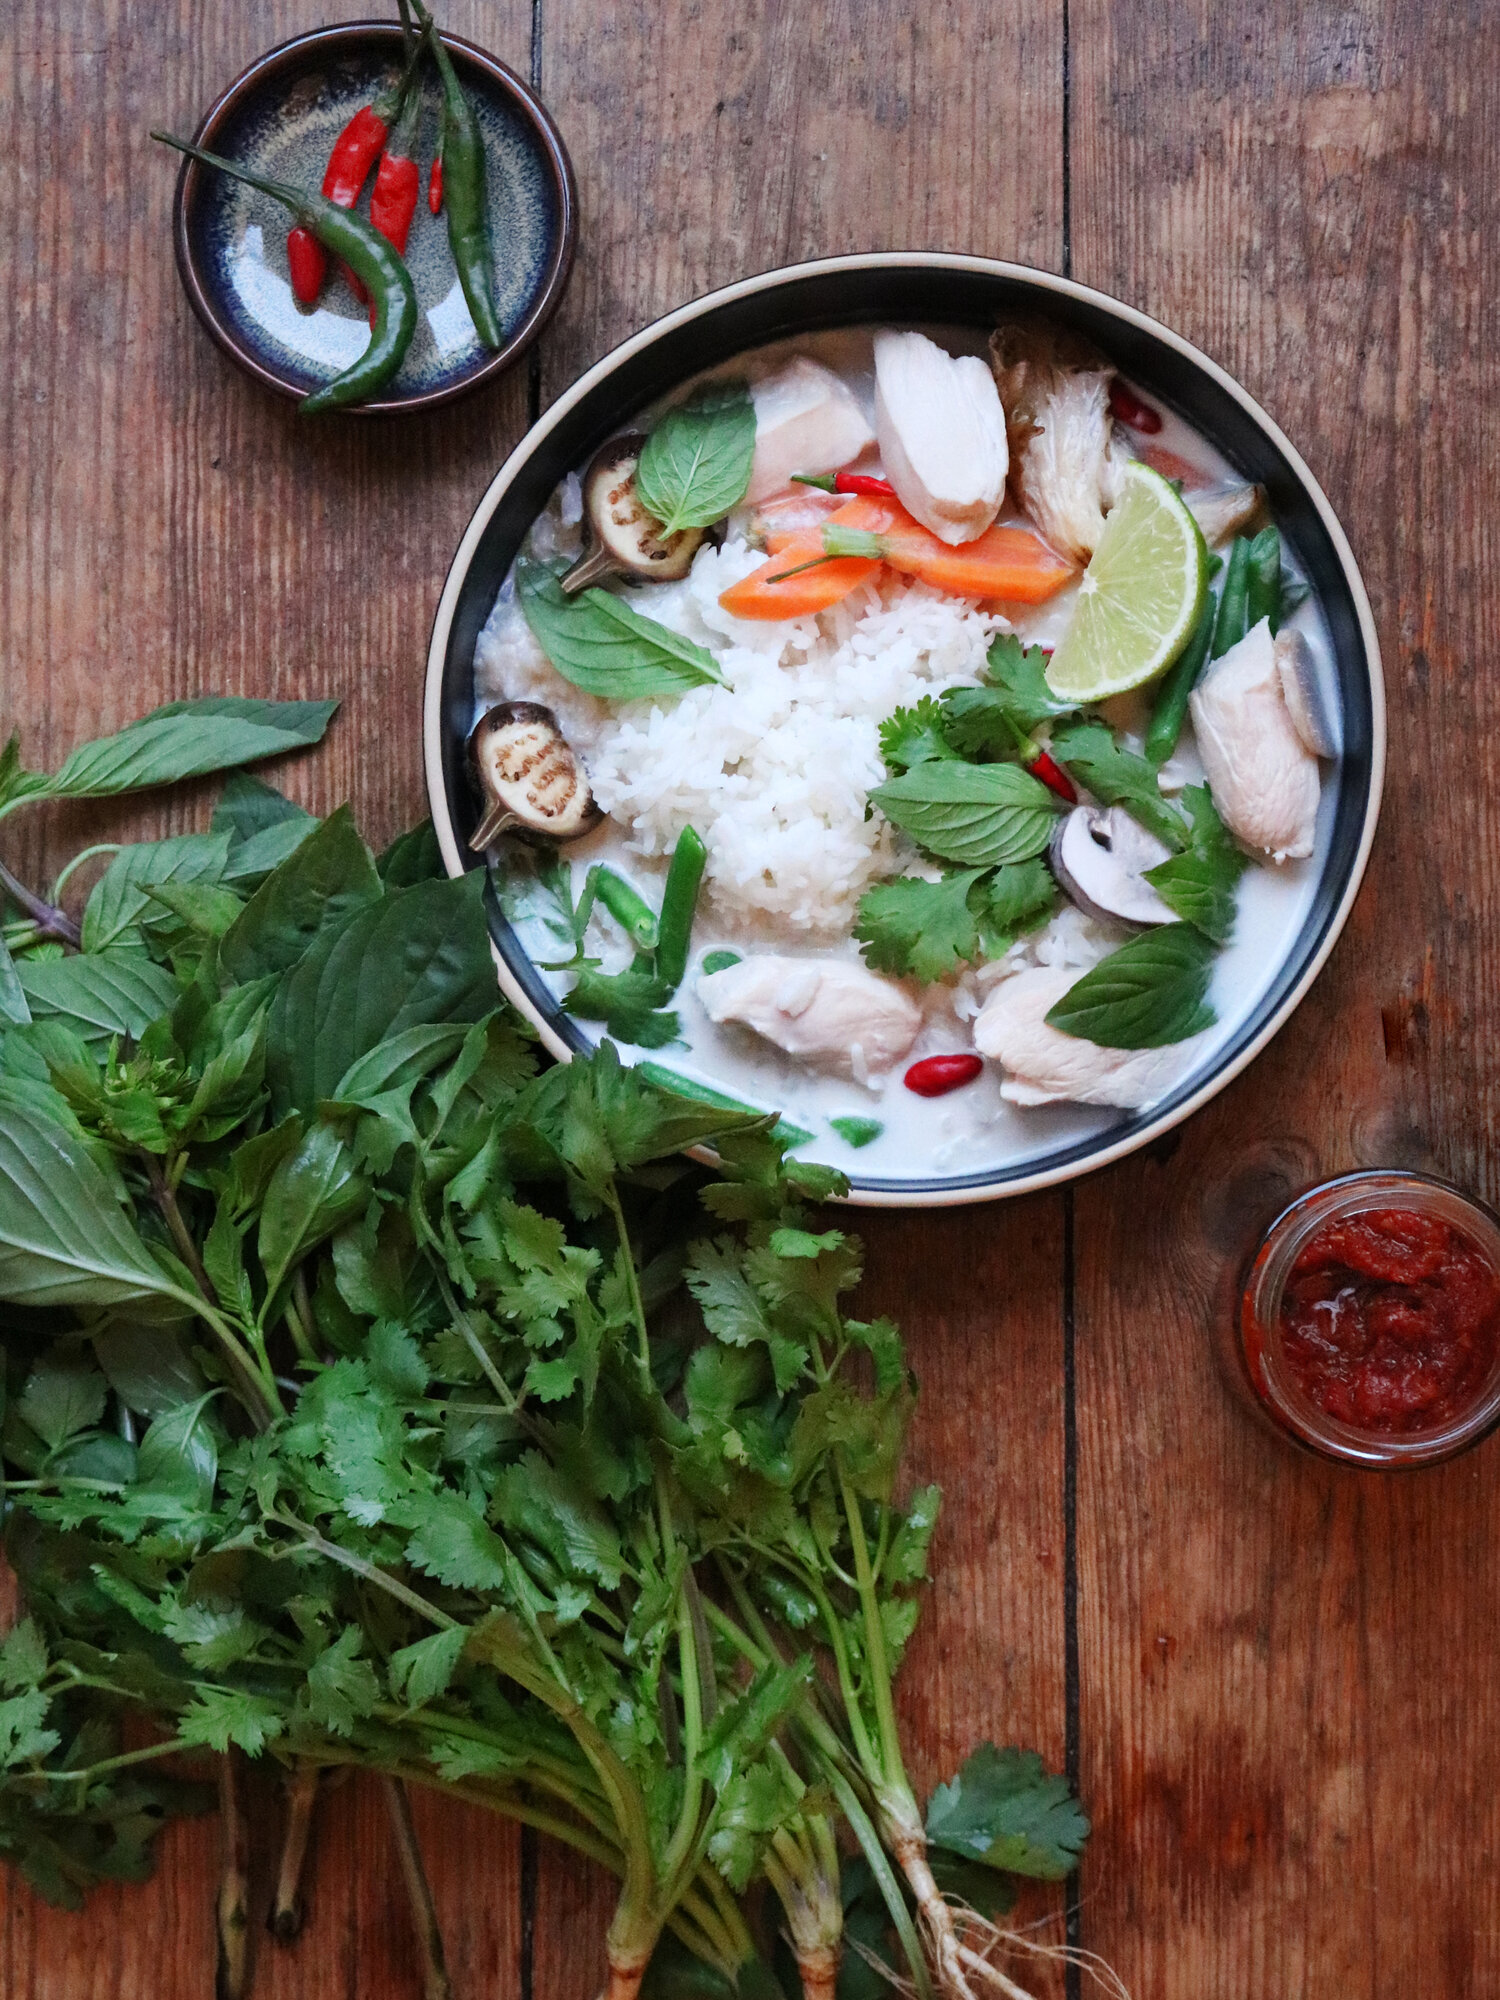 Tom Kha Gai – Thailändische Kokossuppe mit Huhn — nommunch.com